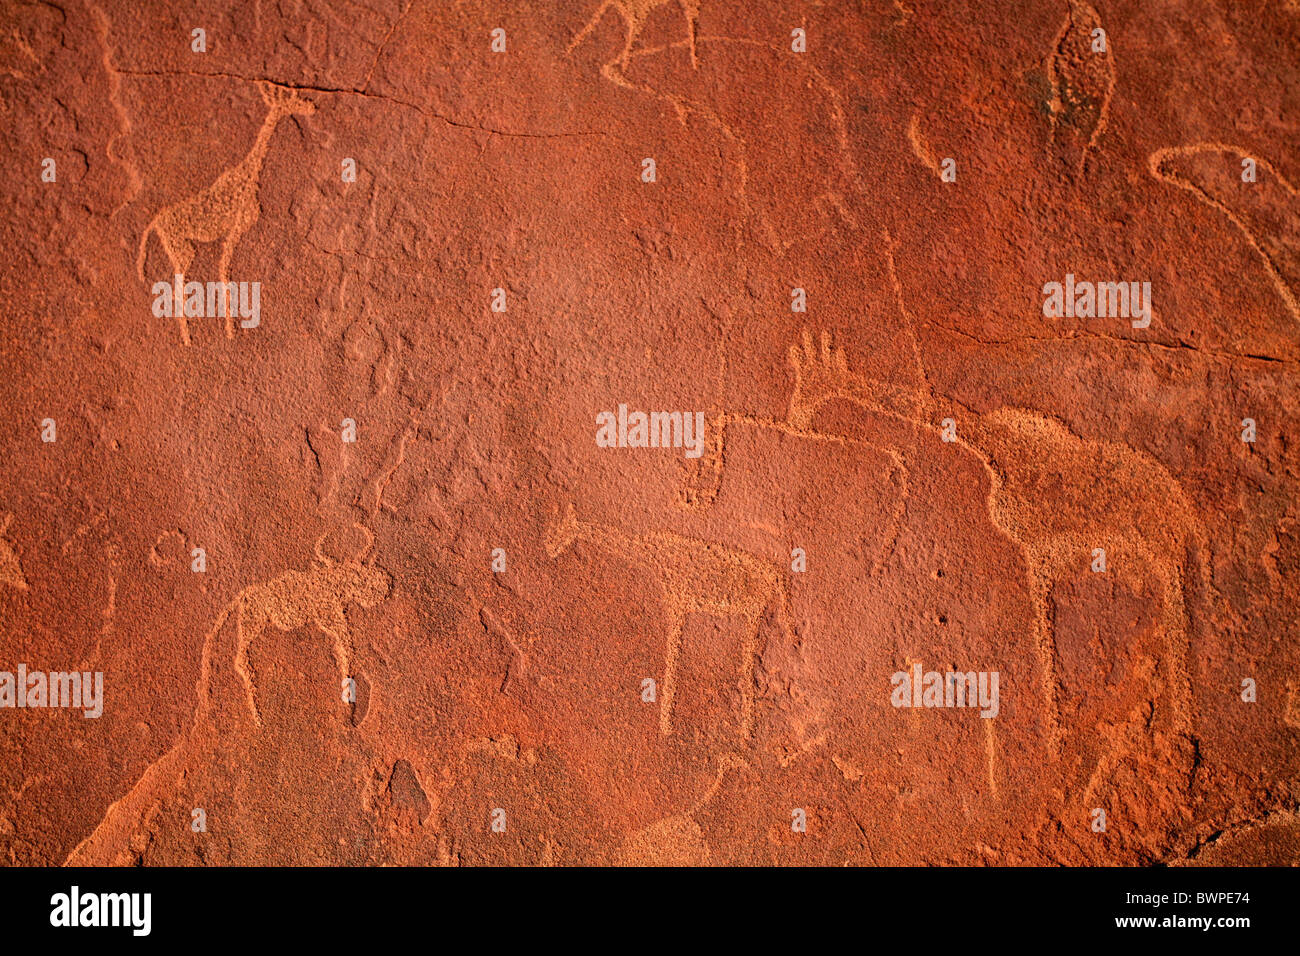 Namibia África Twyfelfontein petroglifos Verano 2007 África sitio Patrimonio Mundial de la UNESCO símbolos grabados rupestres Foto de stock